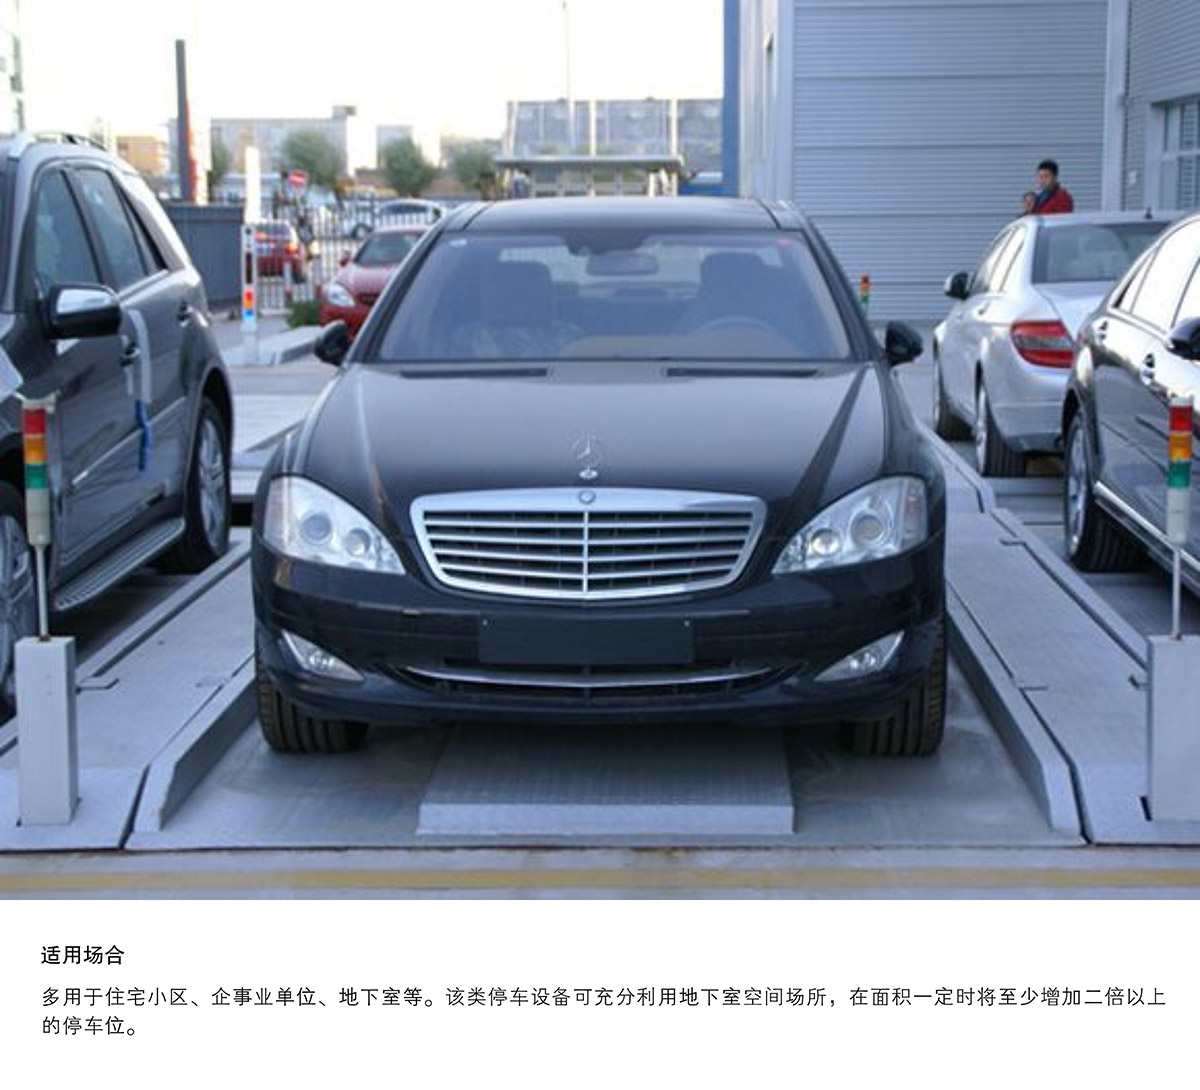 四川成都PJS2D1二层地坑简易升降停车设备适用场合.jpg